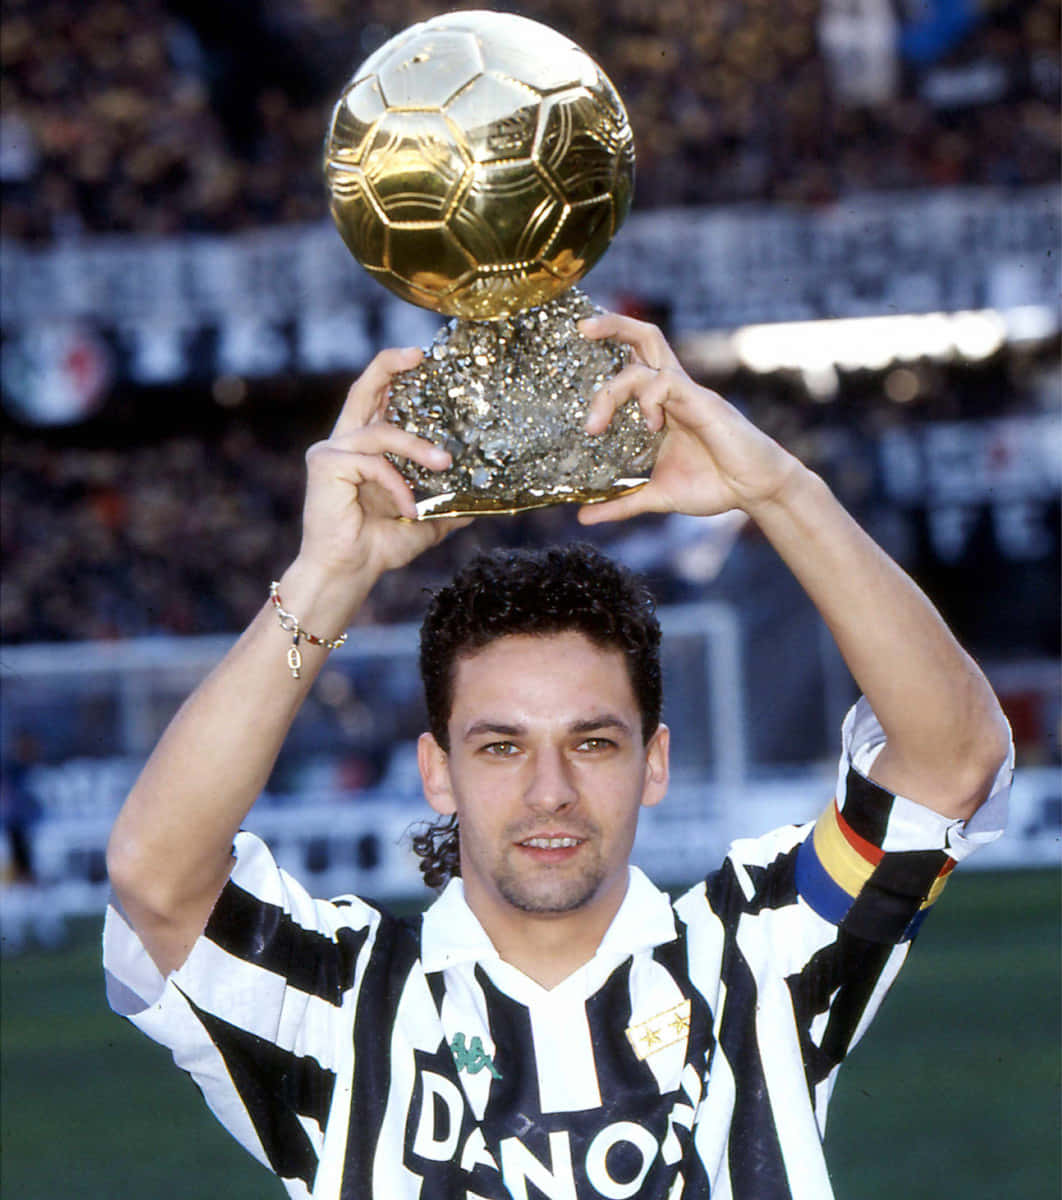 Robertobaggio Alza Il Trofeo Del Pallone D'oro Del 1993. Sfondo